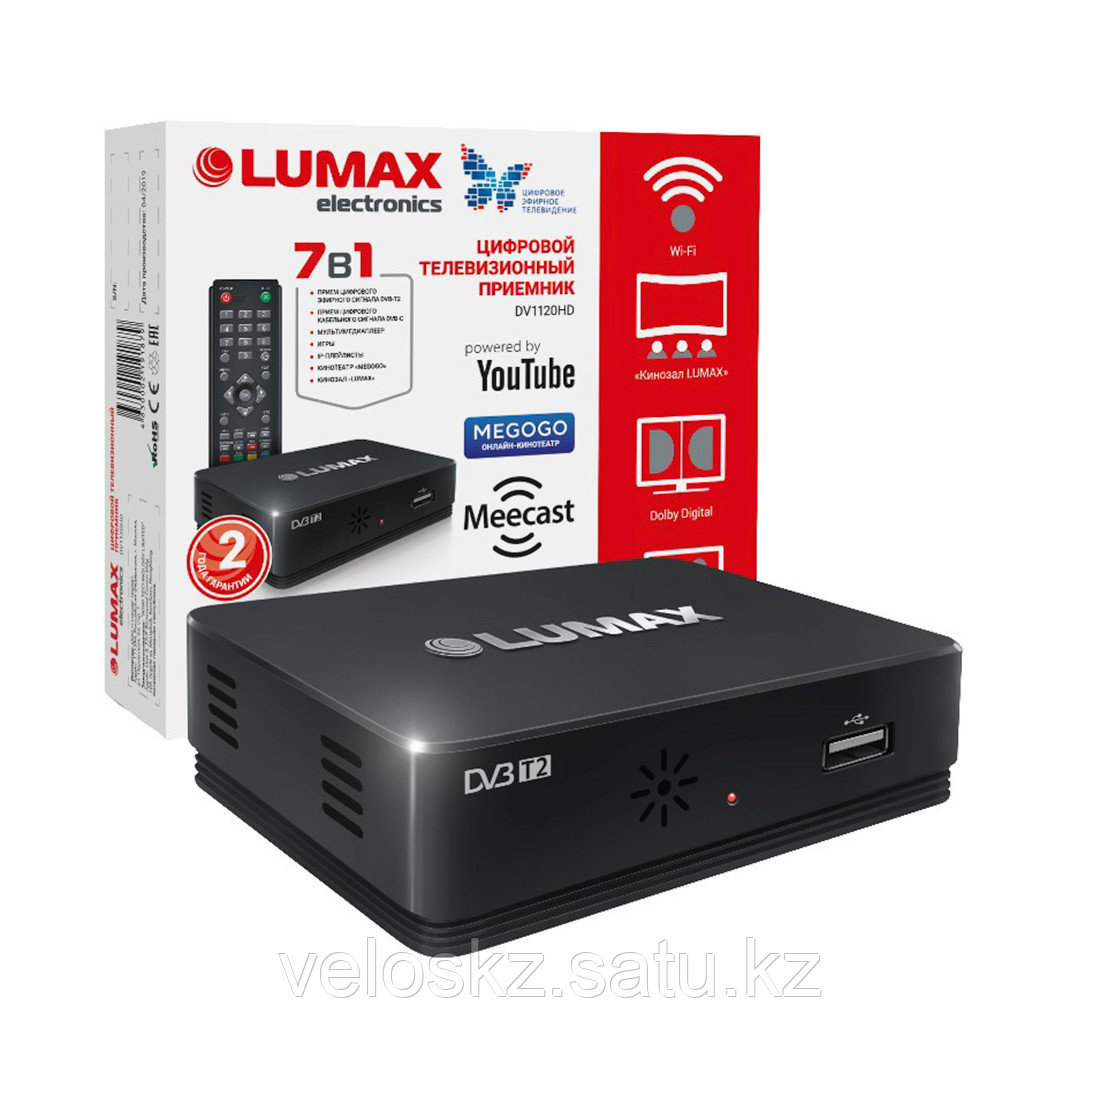 Цифровой телевизионный приемник LUMAX DV1120HD, X3235S, Wi-Fi (требуется адаптер)